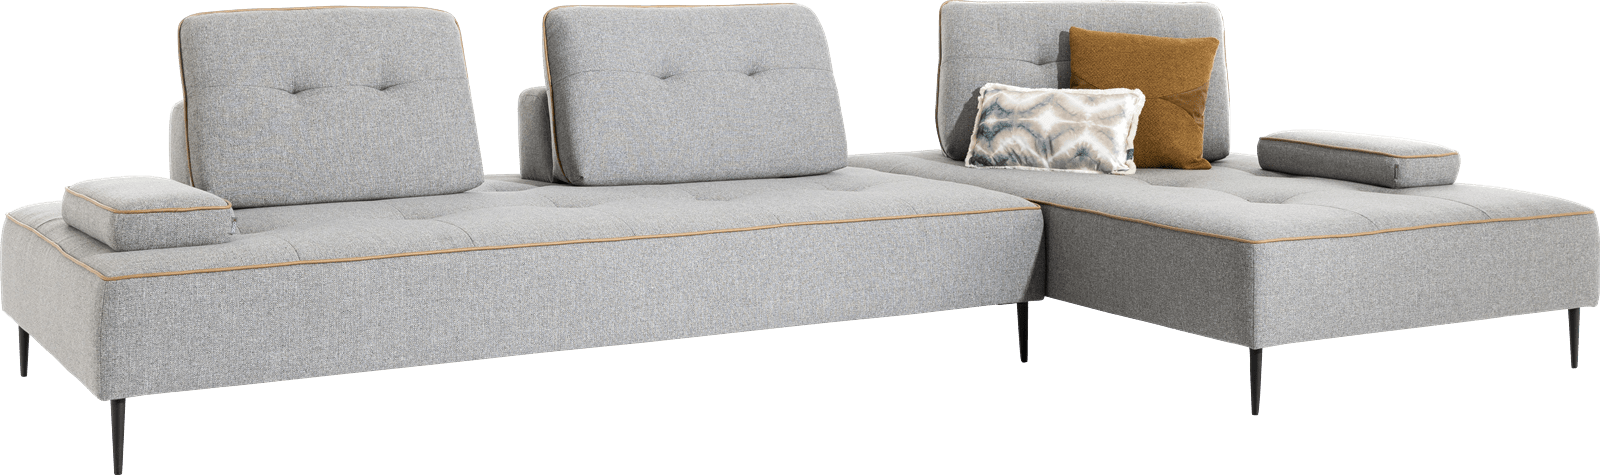 XOOON - Saint Tropez - Minimalistisches Design - Sofas - 2-Sitzer Element 120 cm. / Eckteil recht